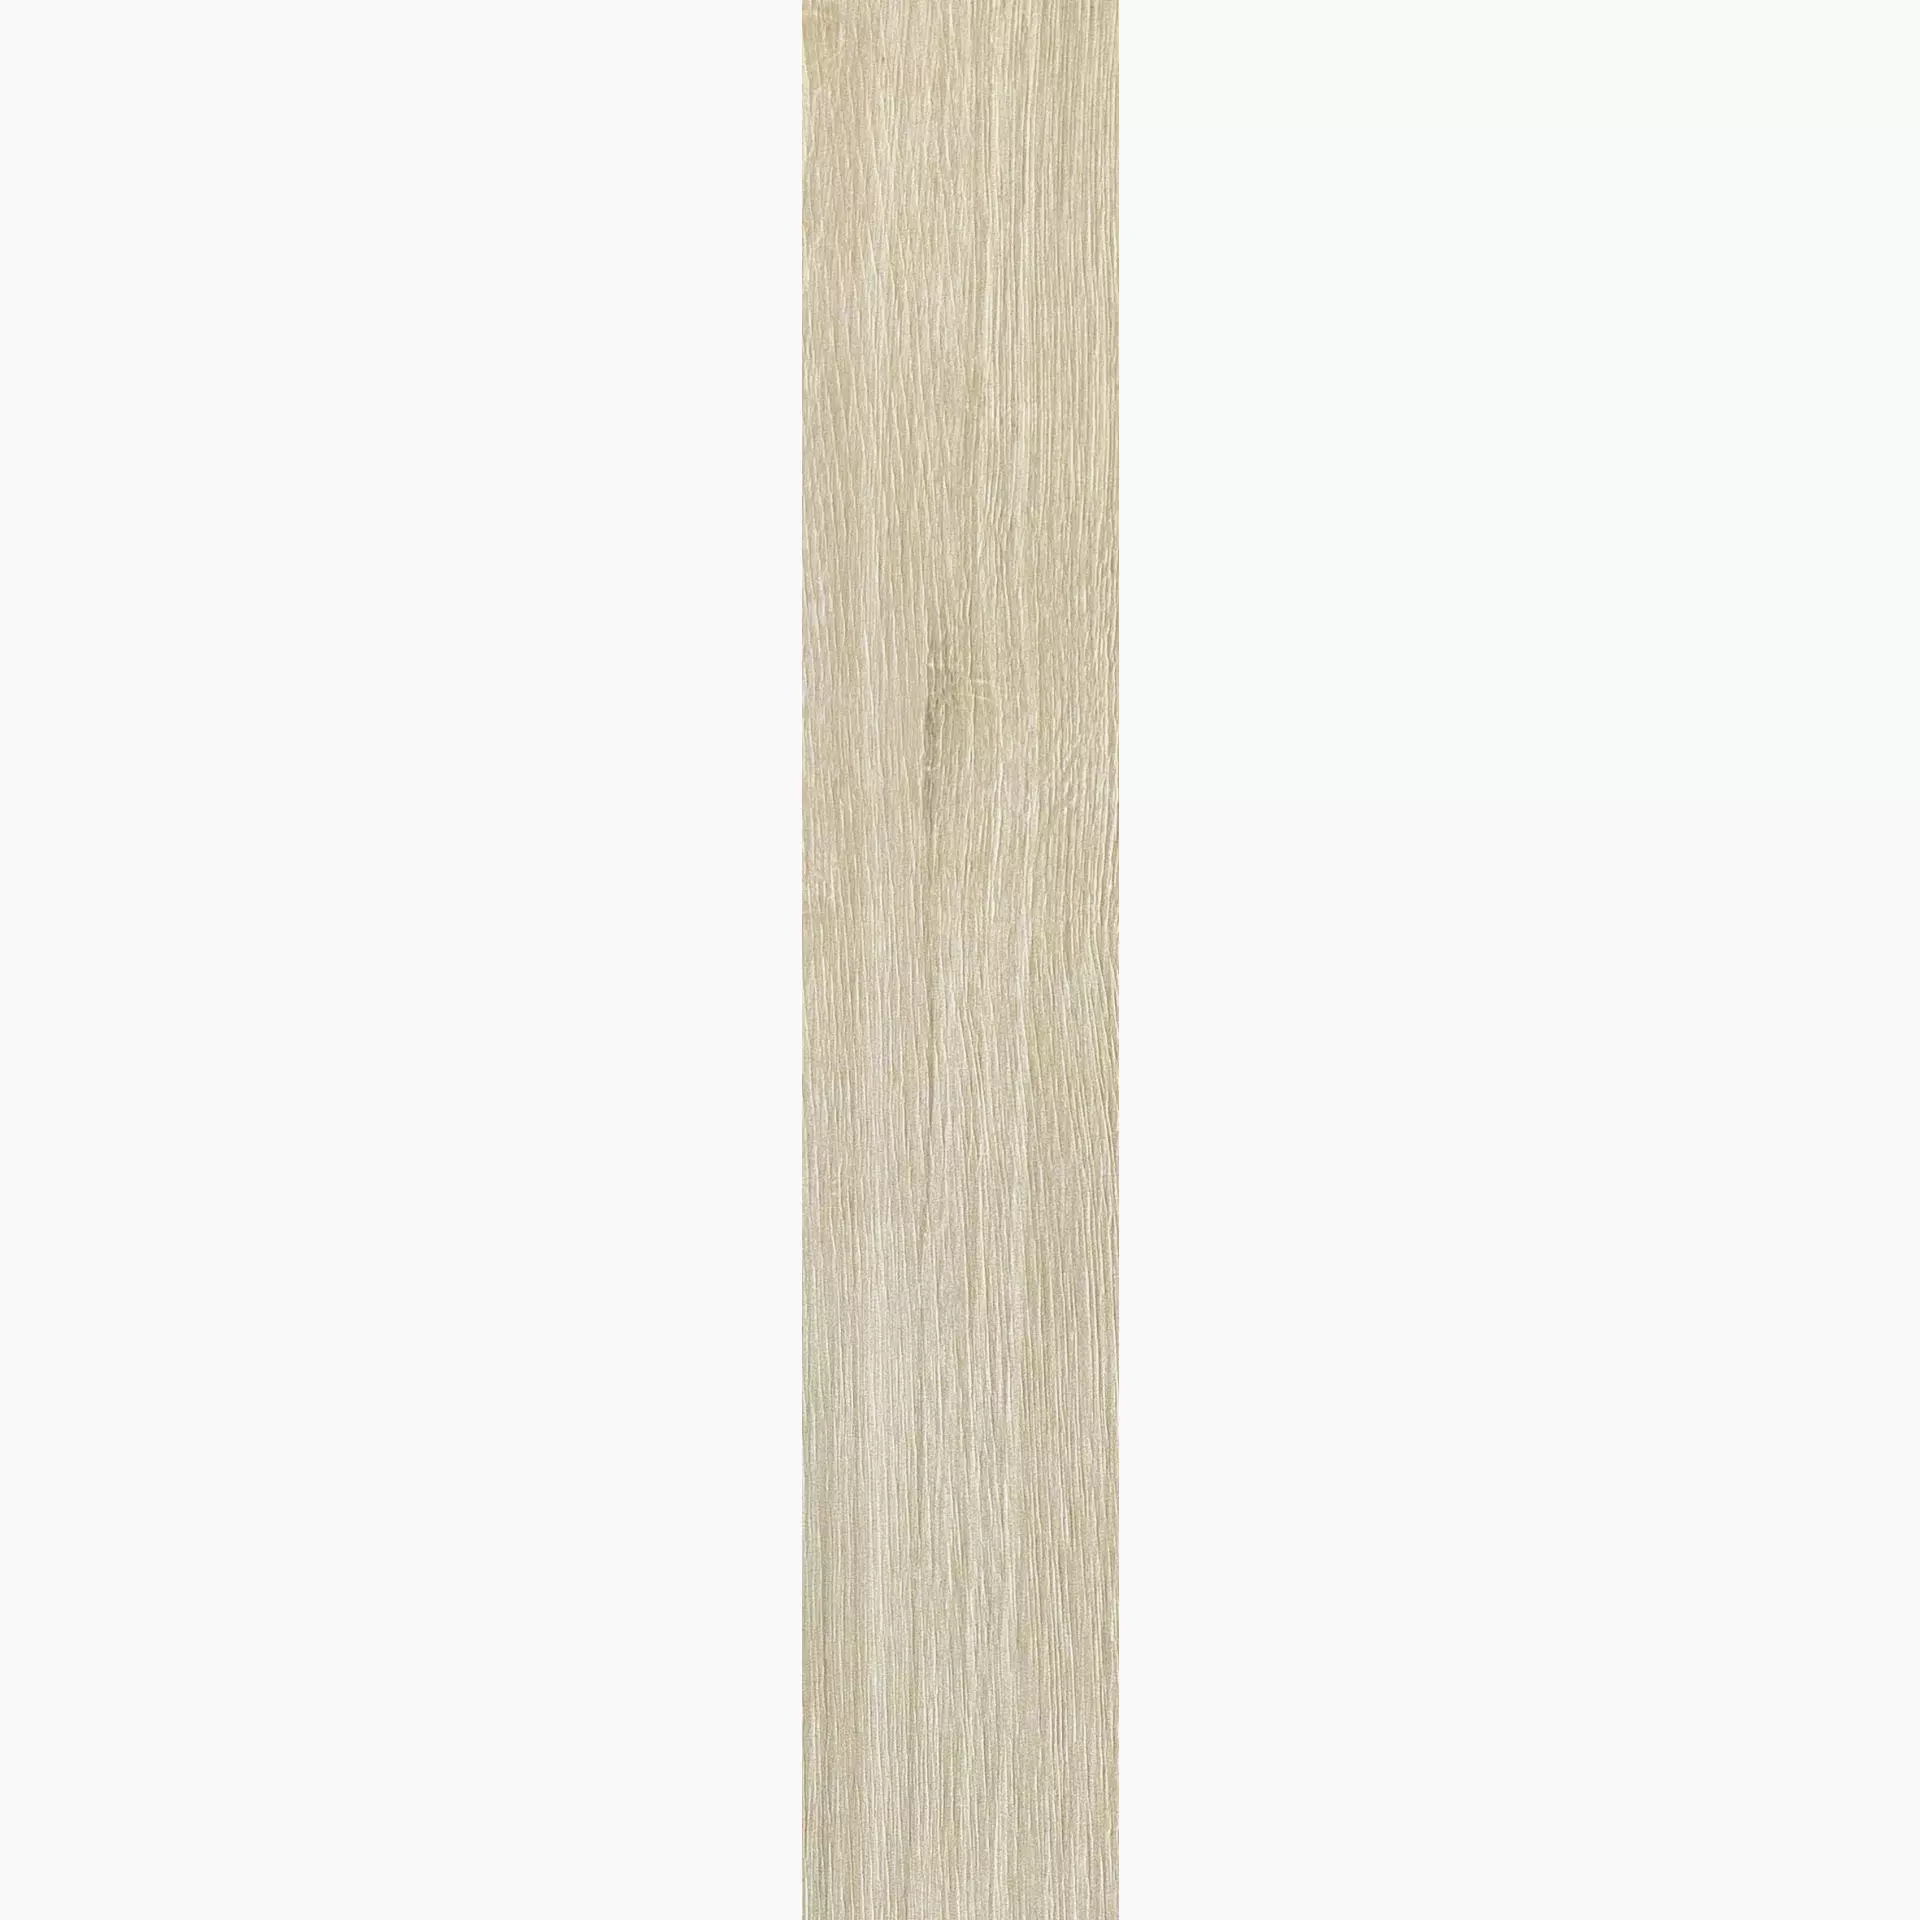 Florim Planches De Rex Amande Naturale – Matt 755608 20x120cm rectified 9mm